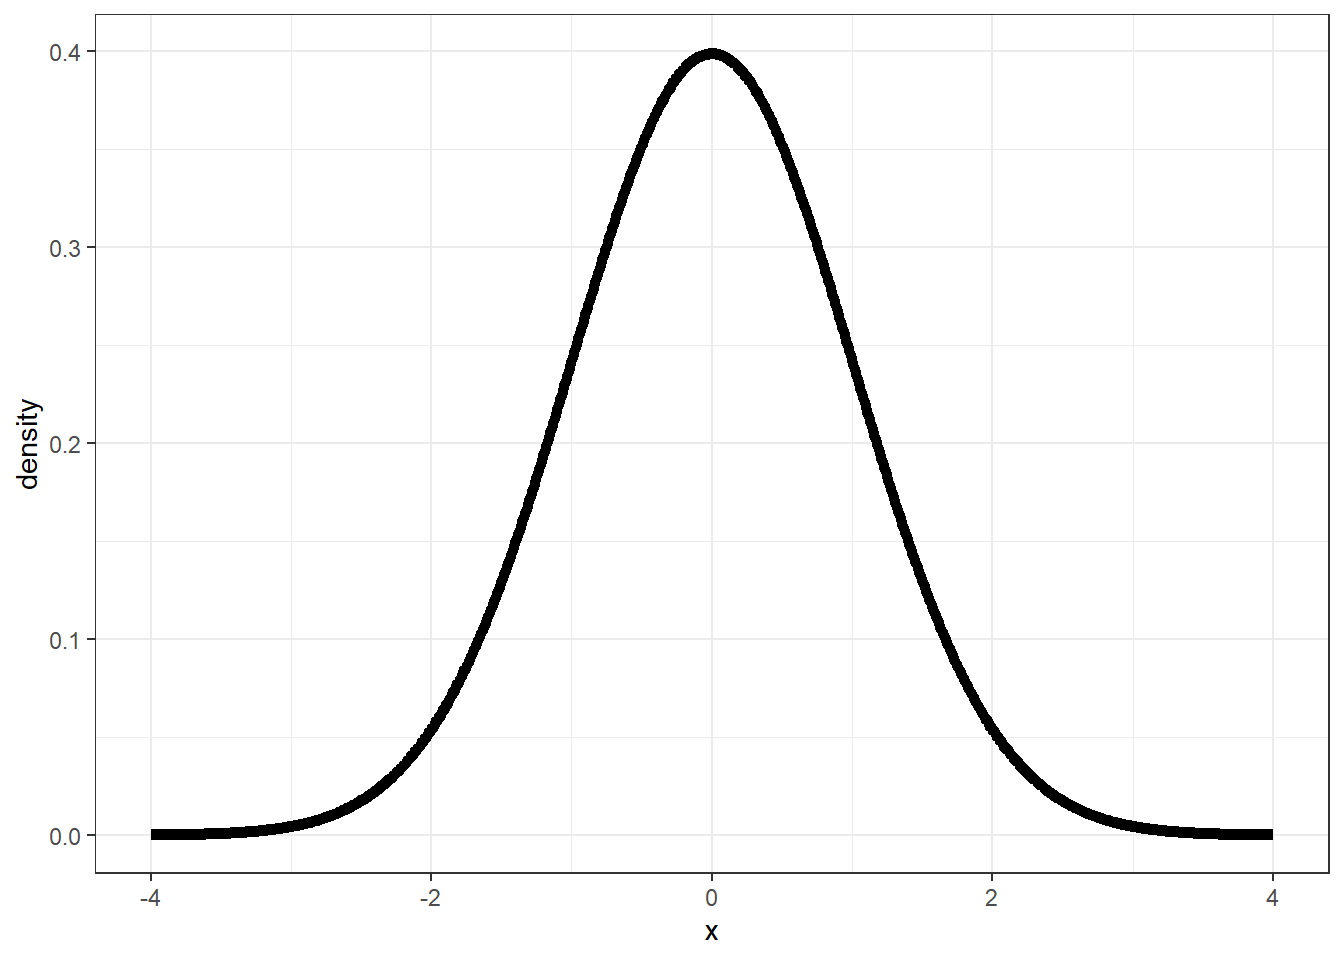 Normaalverdeling weergegeven als density plot met een perfecte klokvorm